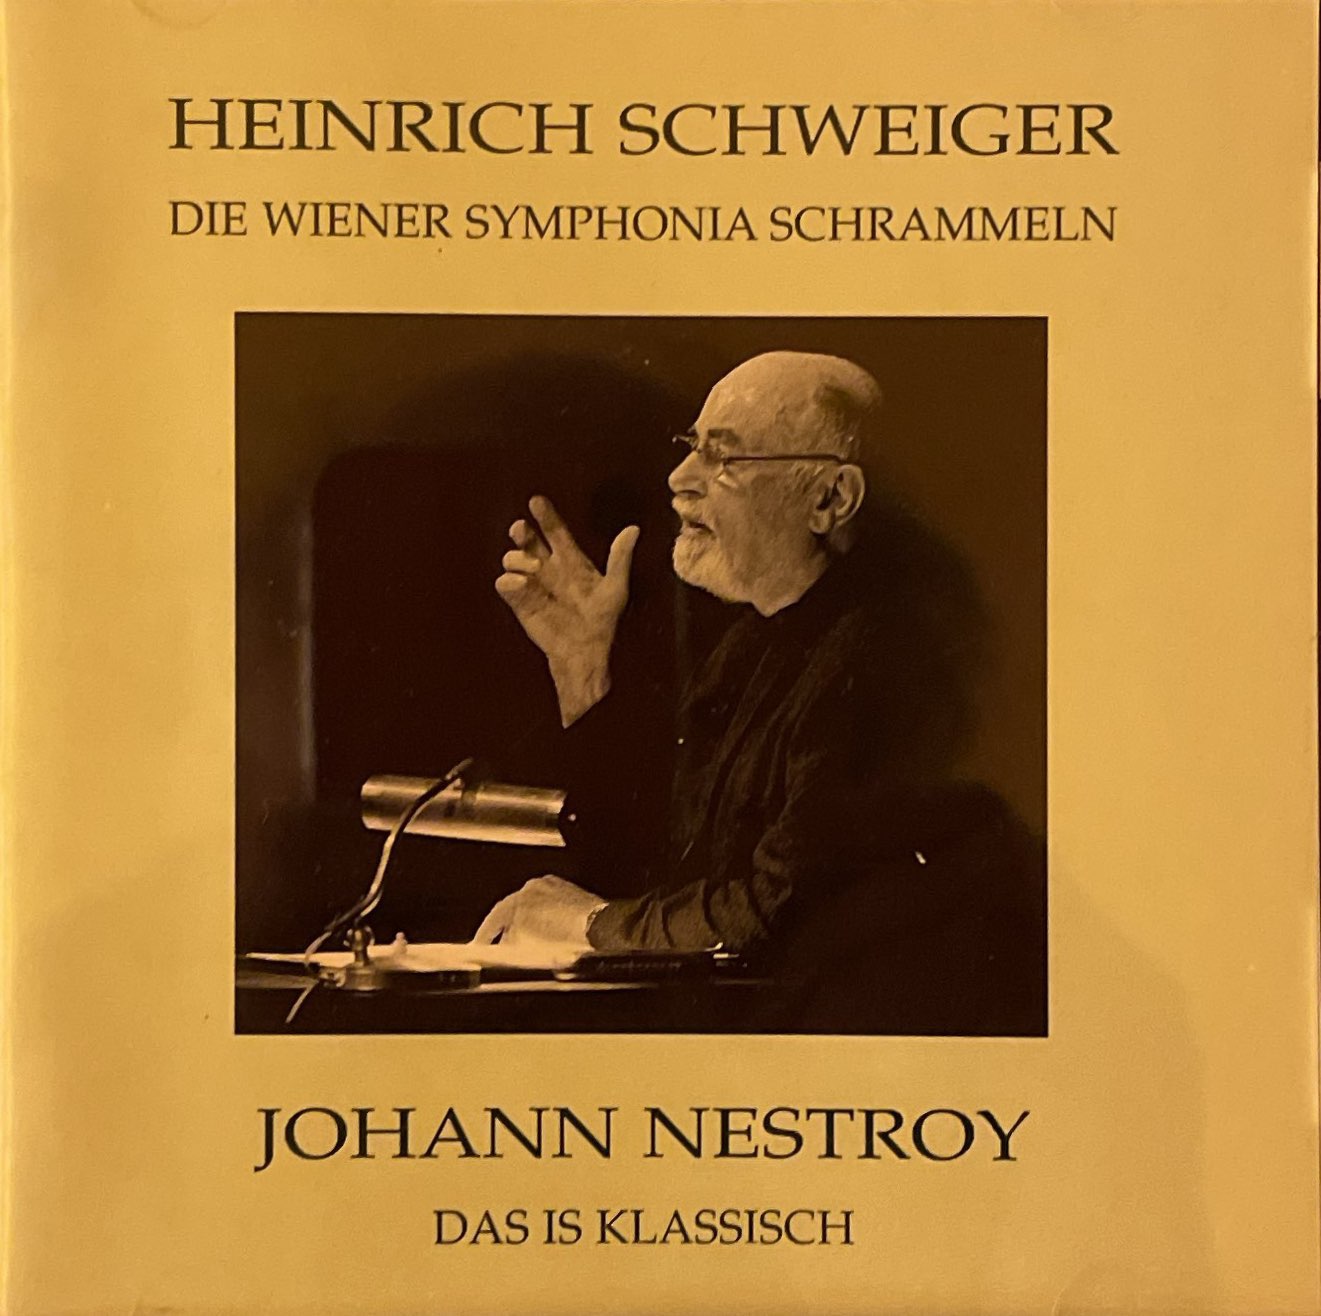 Heinrich Schweiger - Wiener Symphonia Schrammeln